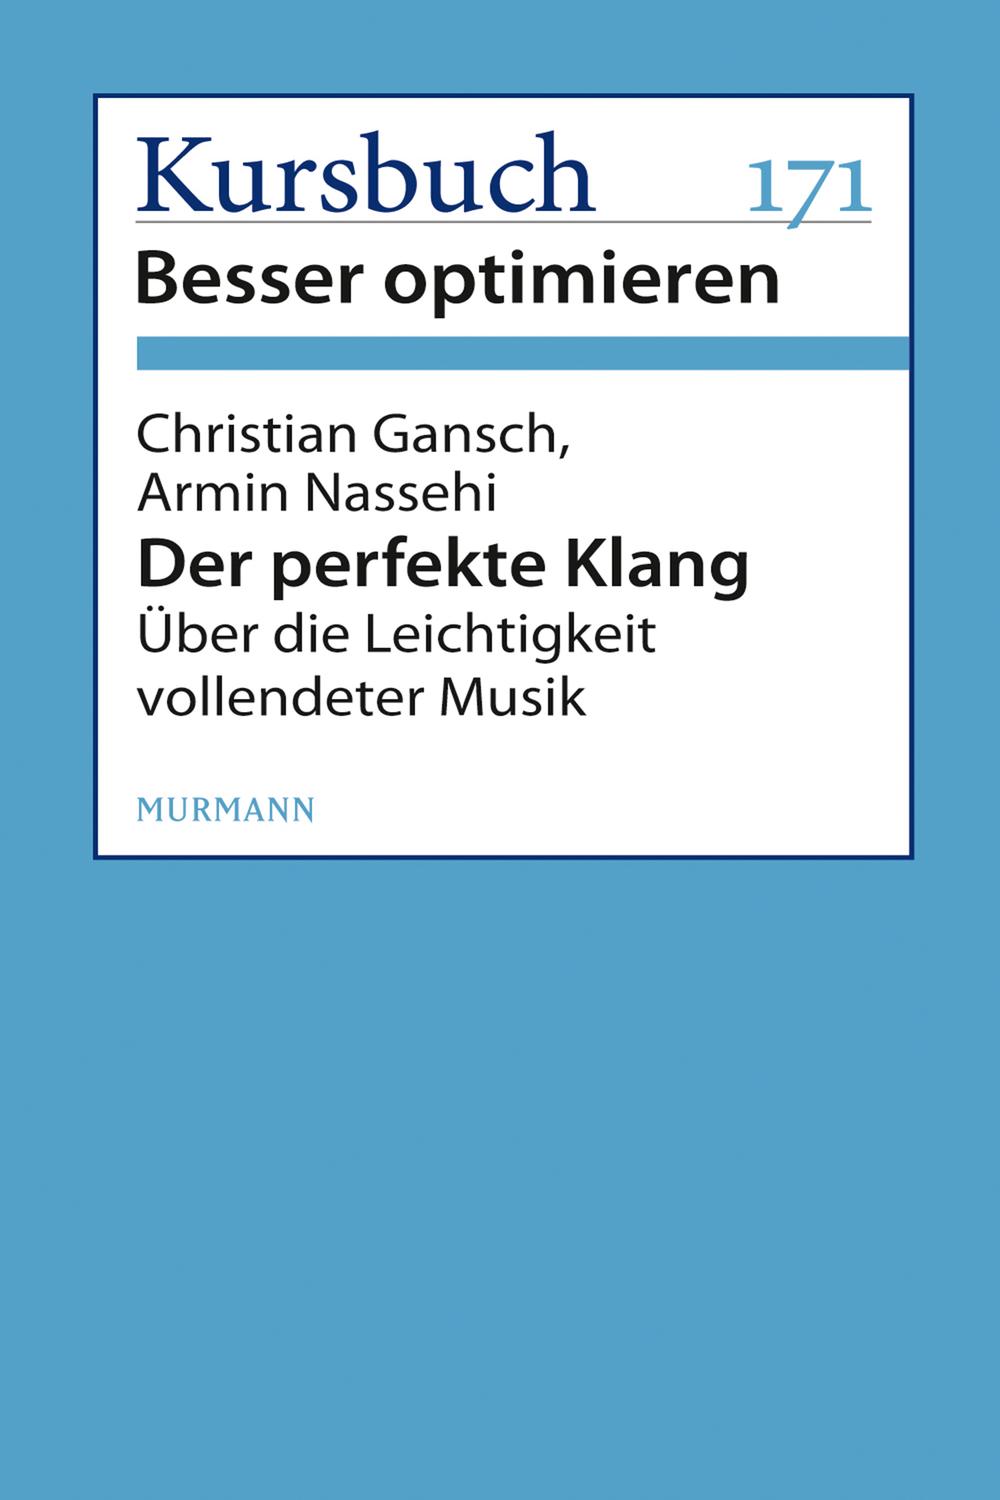 Der perfekte Klang - Christian Gansch, Armin Nassehi